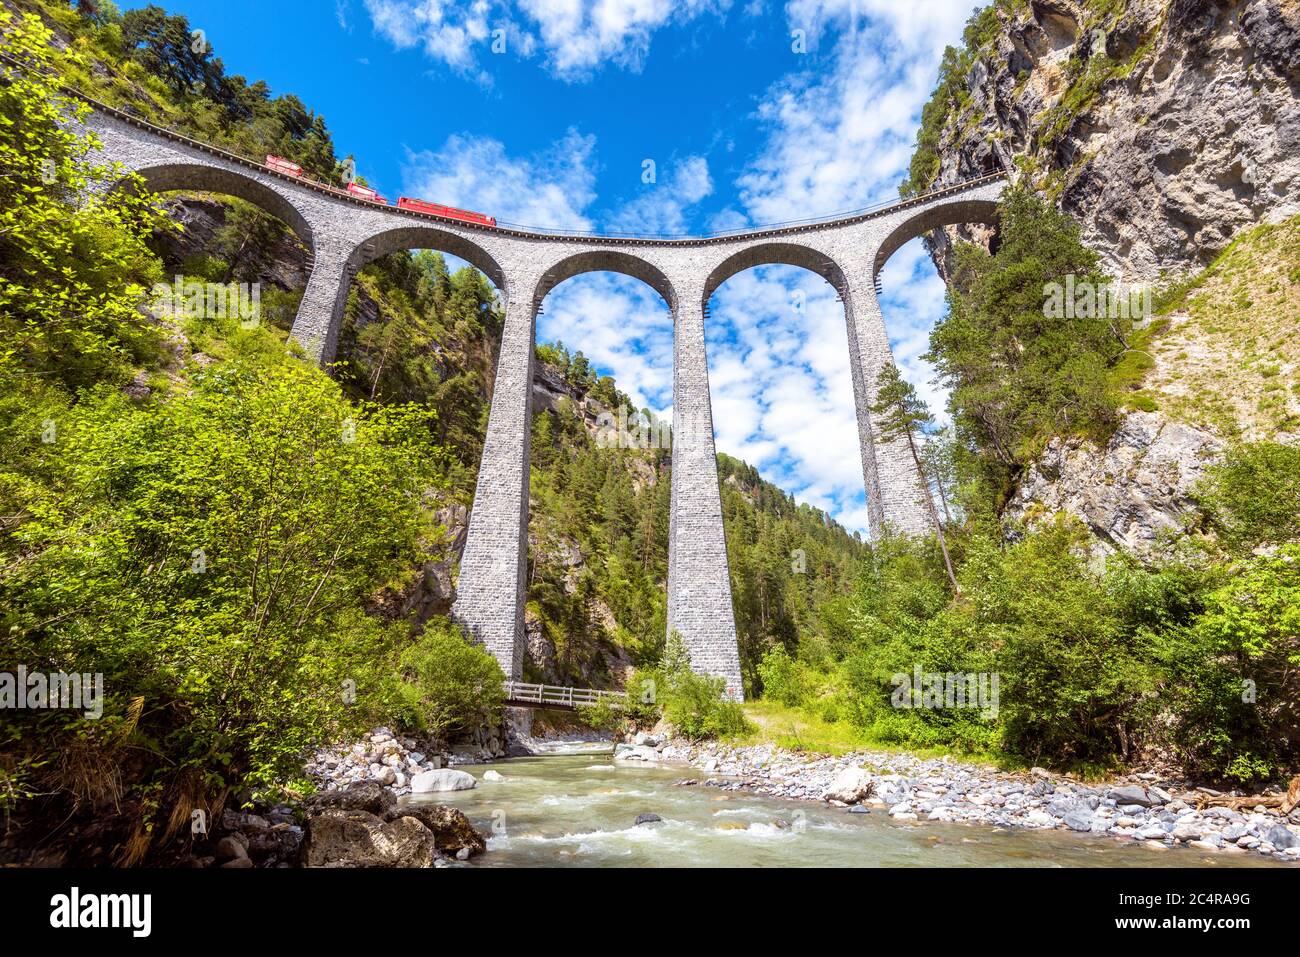 Landwasser Viadukt über Fluss, Filisur, Schweiz. Es ist Wahrzeichen der Schweizer Alpen. Rote Bahn fährt auf hoher Eisenbahnbrücke in den Bergen. Landschaftlich schöner Blick auf Stockfoto